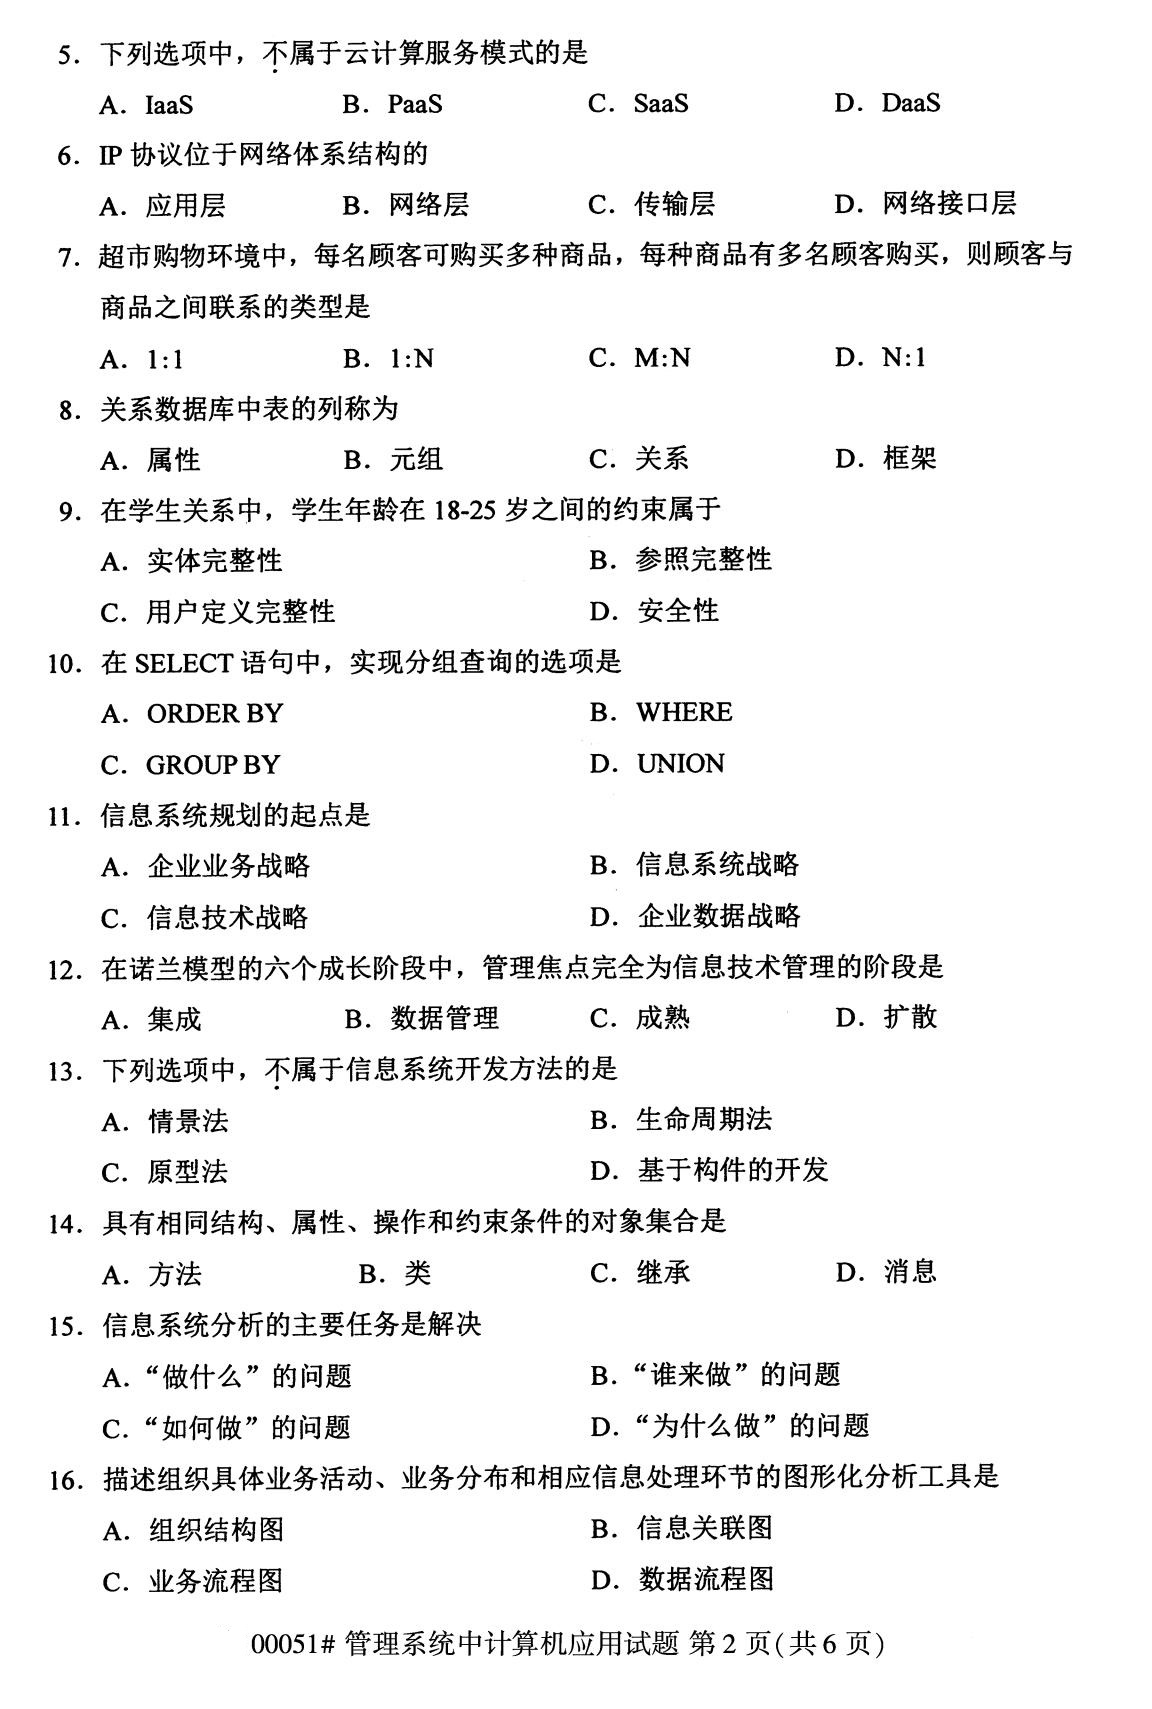 2020年8月辽宁省自学考试本科管理系统中计算机应用真题(图2)